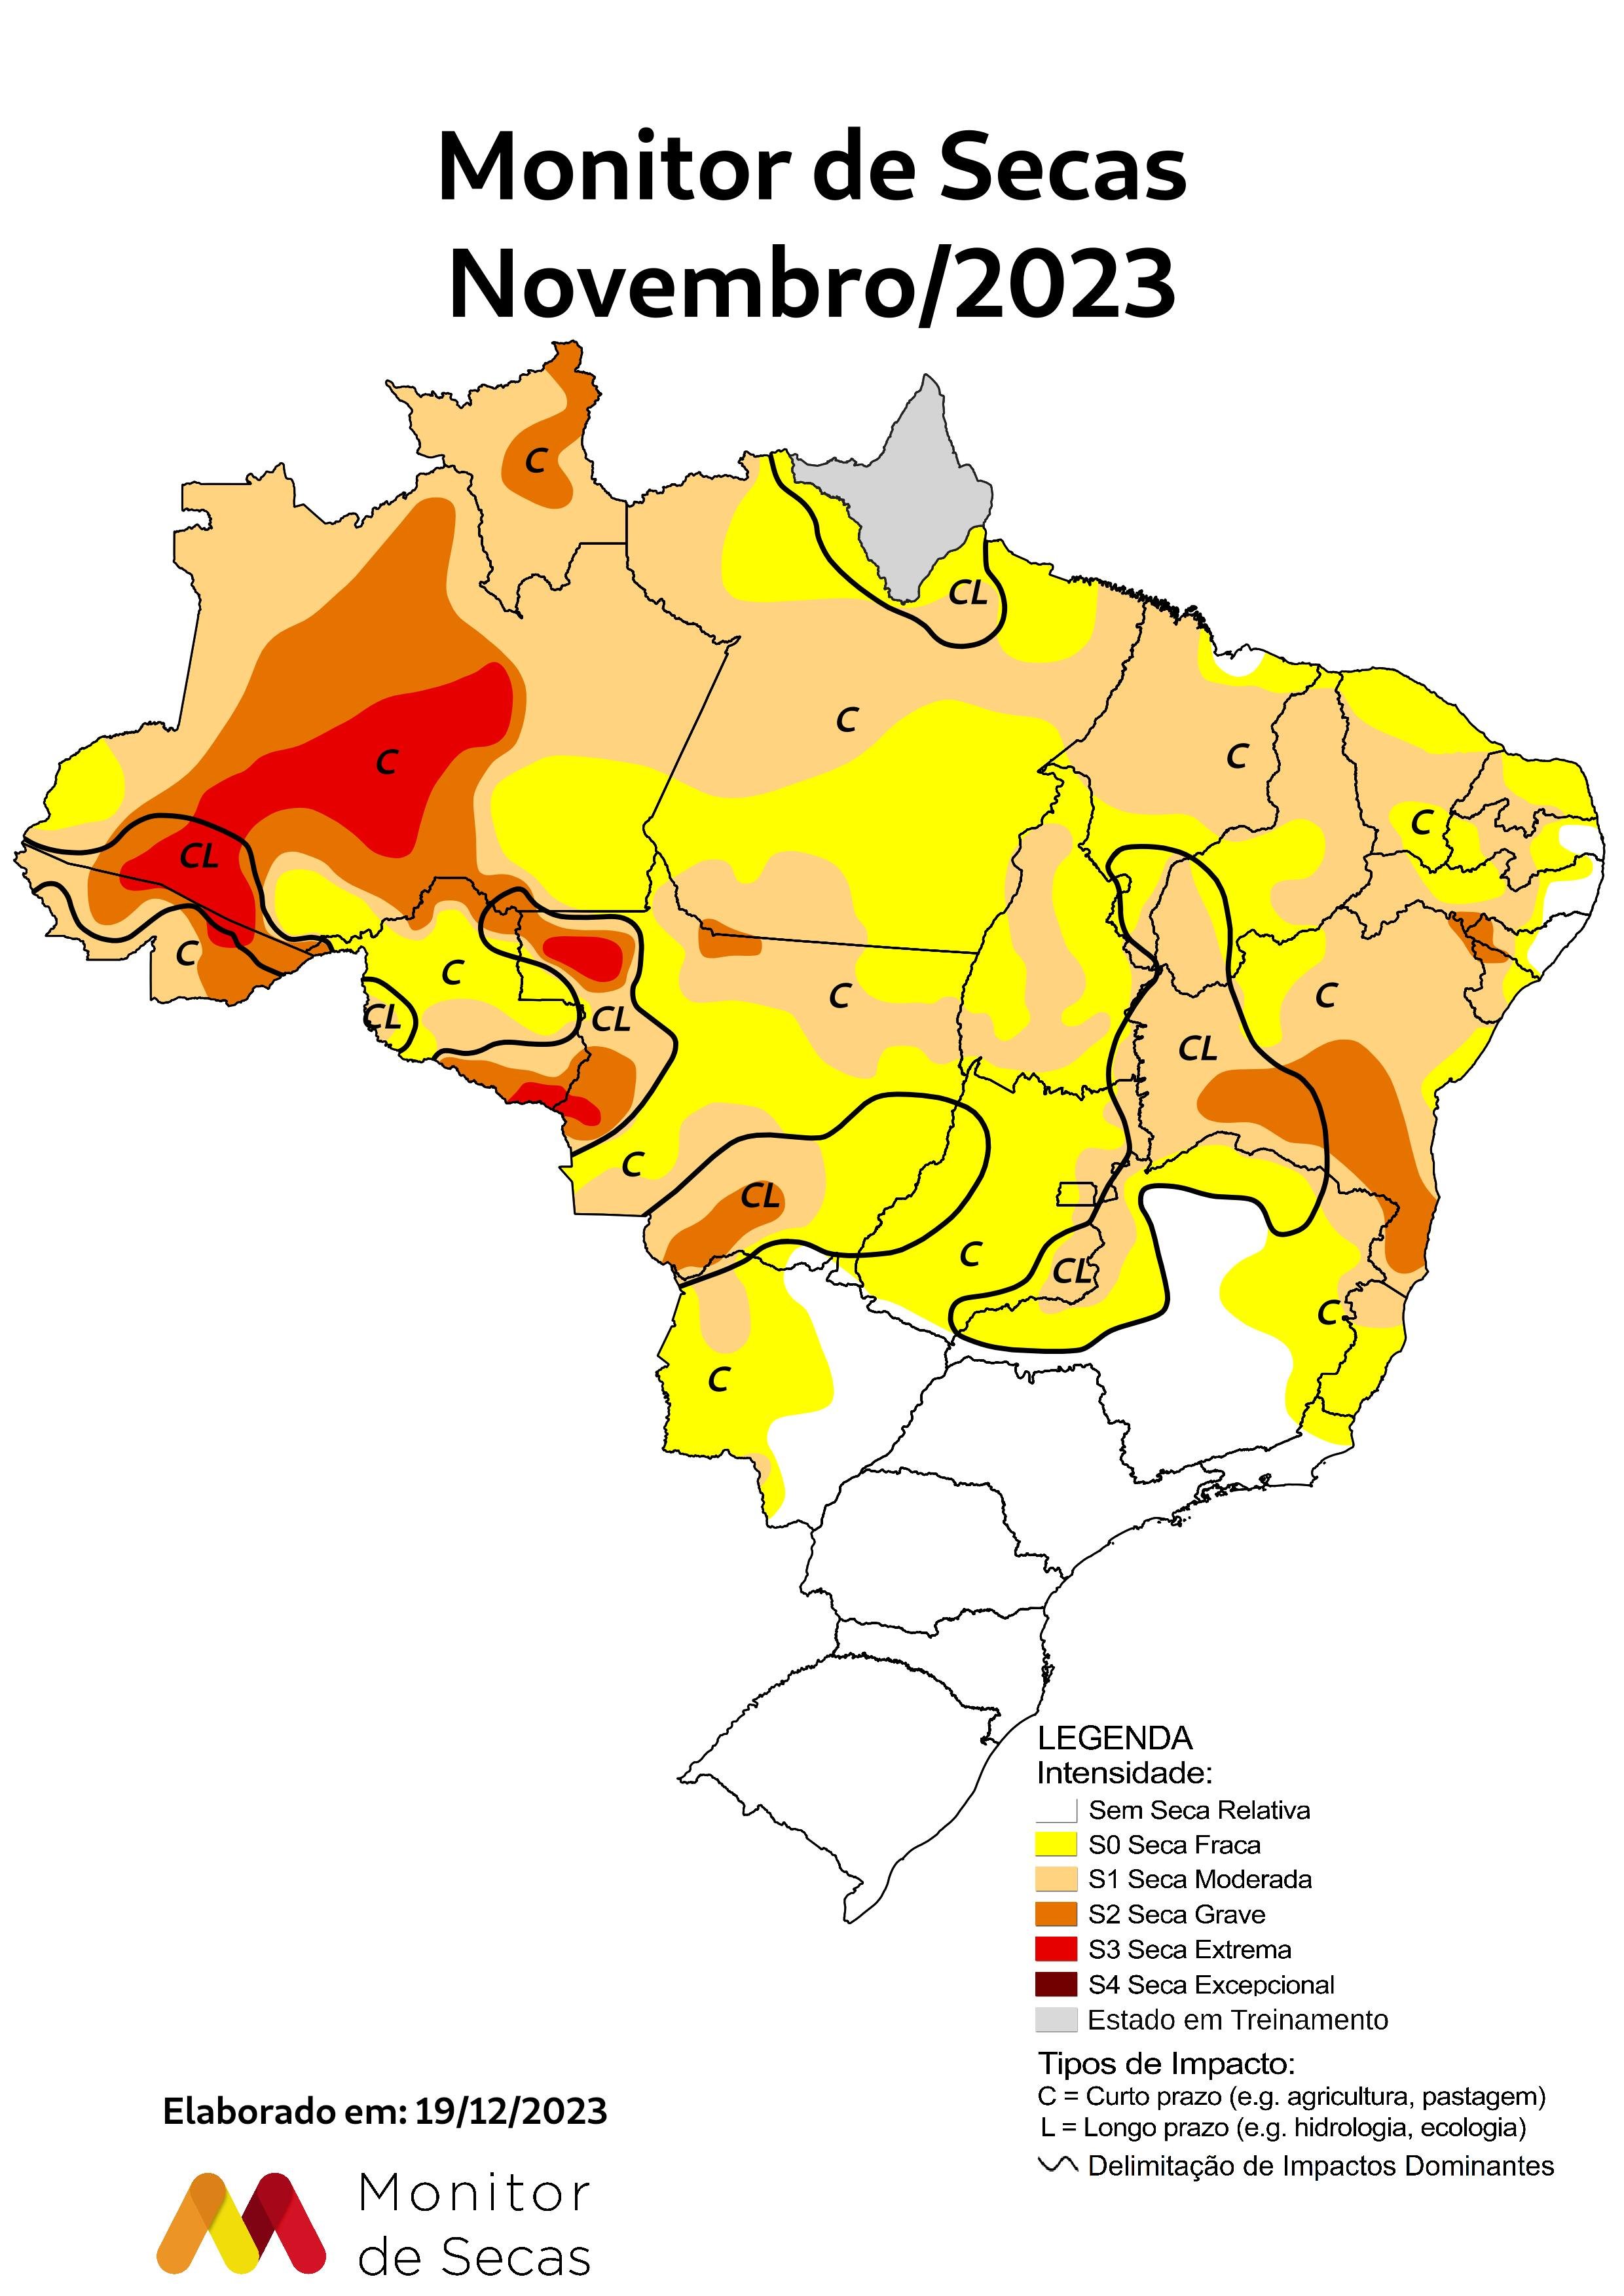 Figura 1- Monitoramento de seca para o Brasil em novembro.